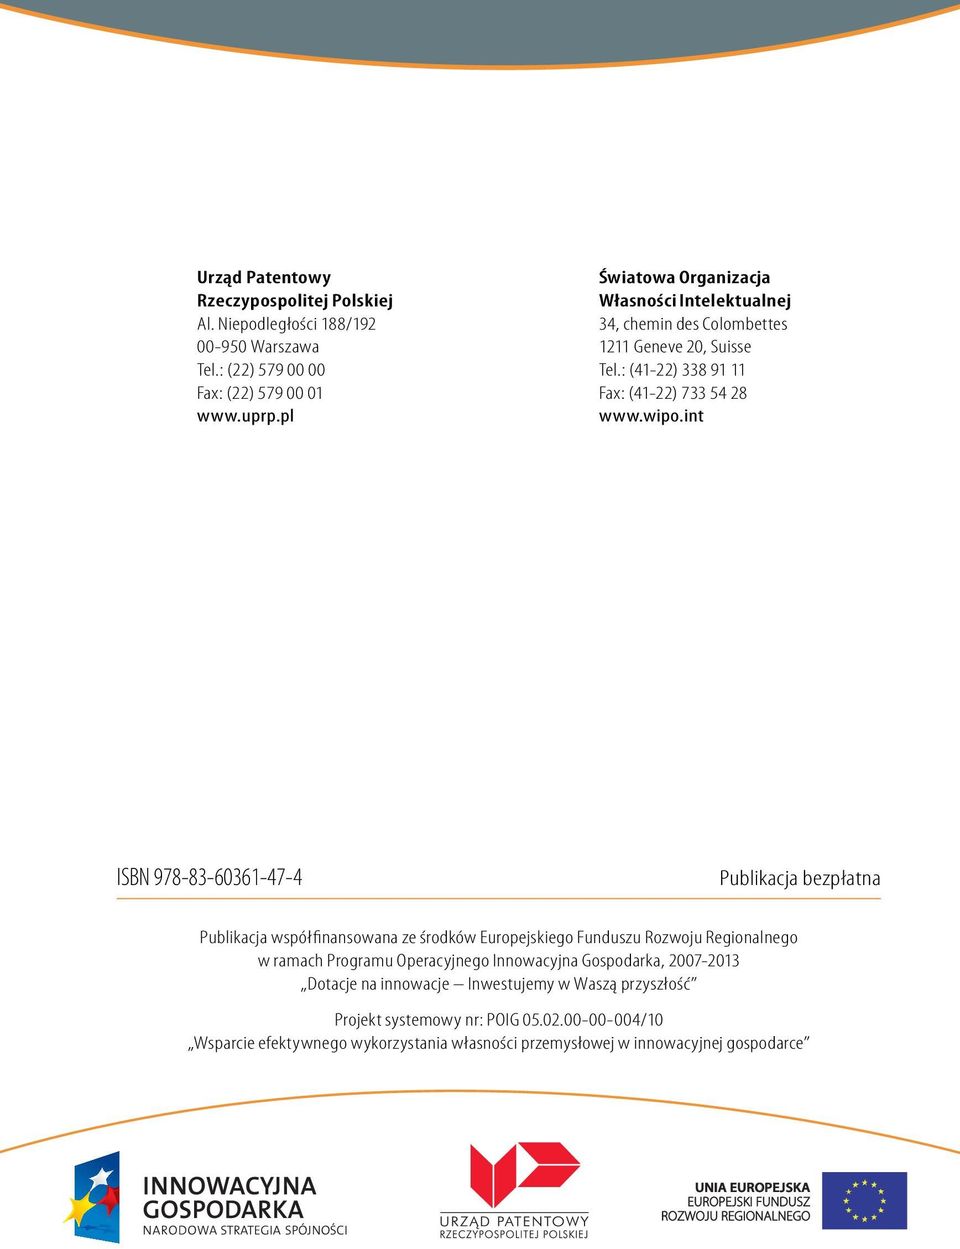 int ISBN 978-83-60361-47-4 Publikacja bezpłatna Publikacja współfinansowana ze środków Europejskiego Funduszu Rozwoju Regionalnego w ramach Programu Operacyjnego Innowacyjna